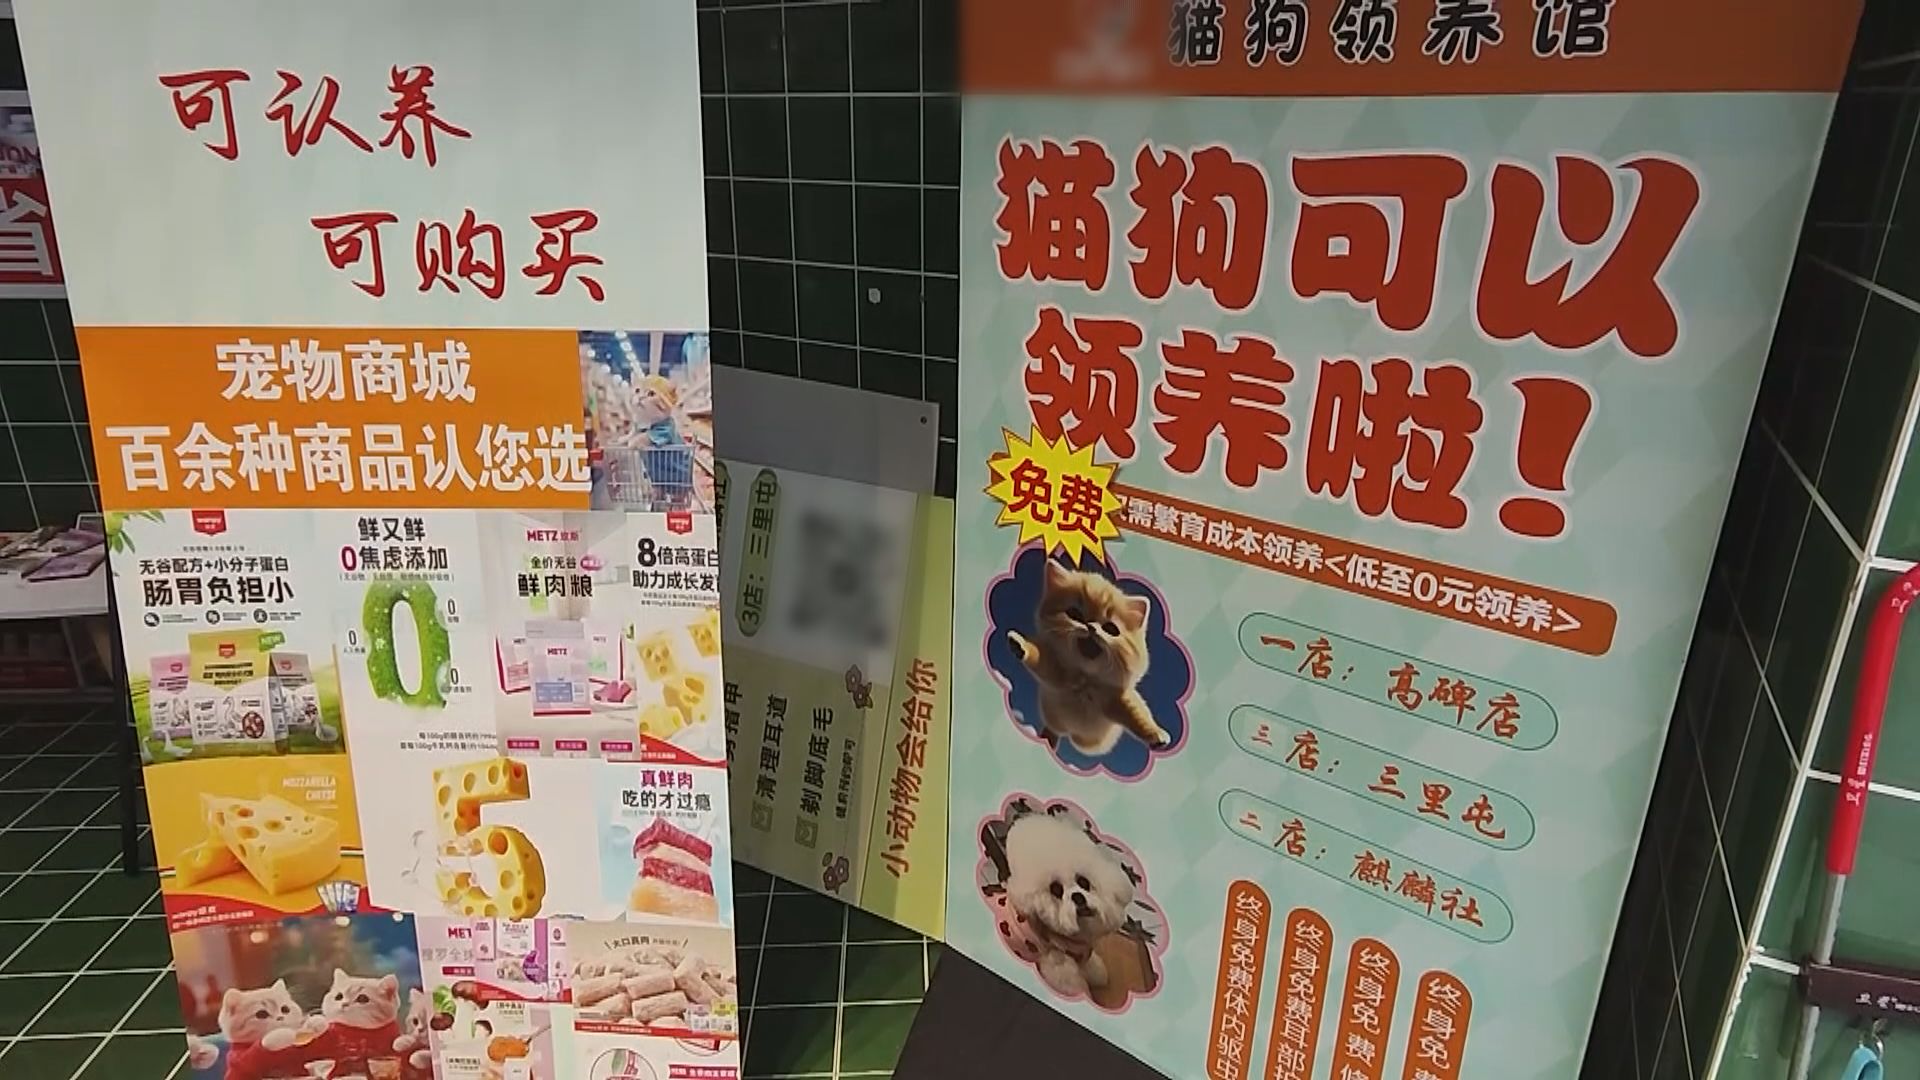 【首都專線】領養陷阱 北京有寵物店領養捆綁消費變相強迫購物 